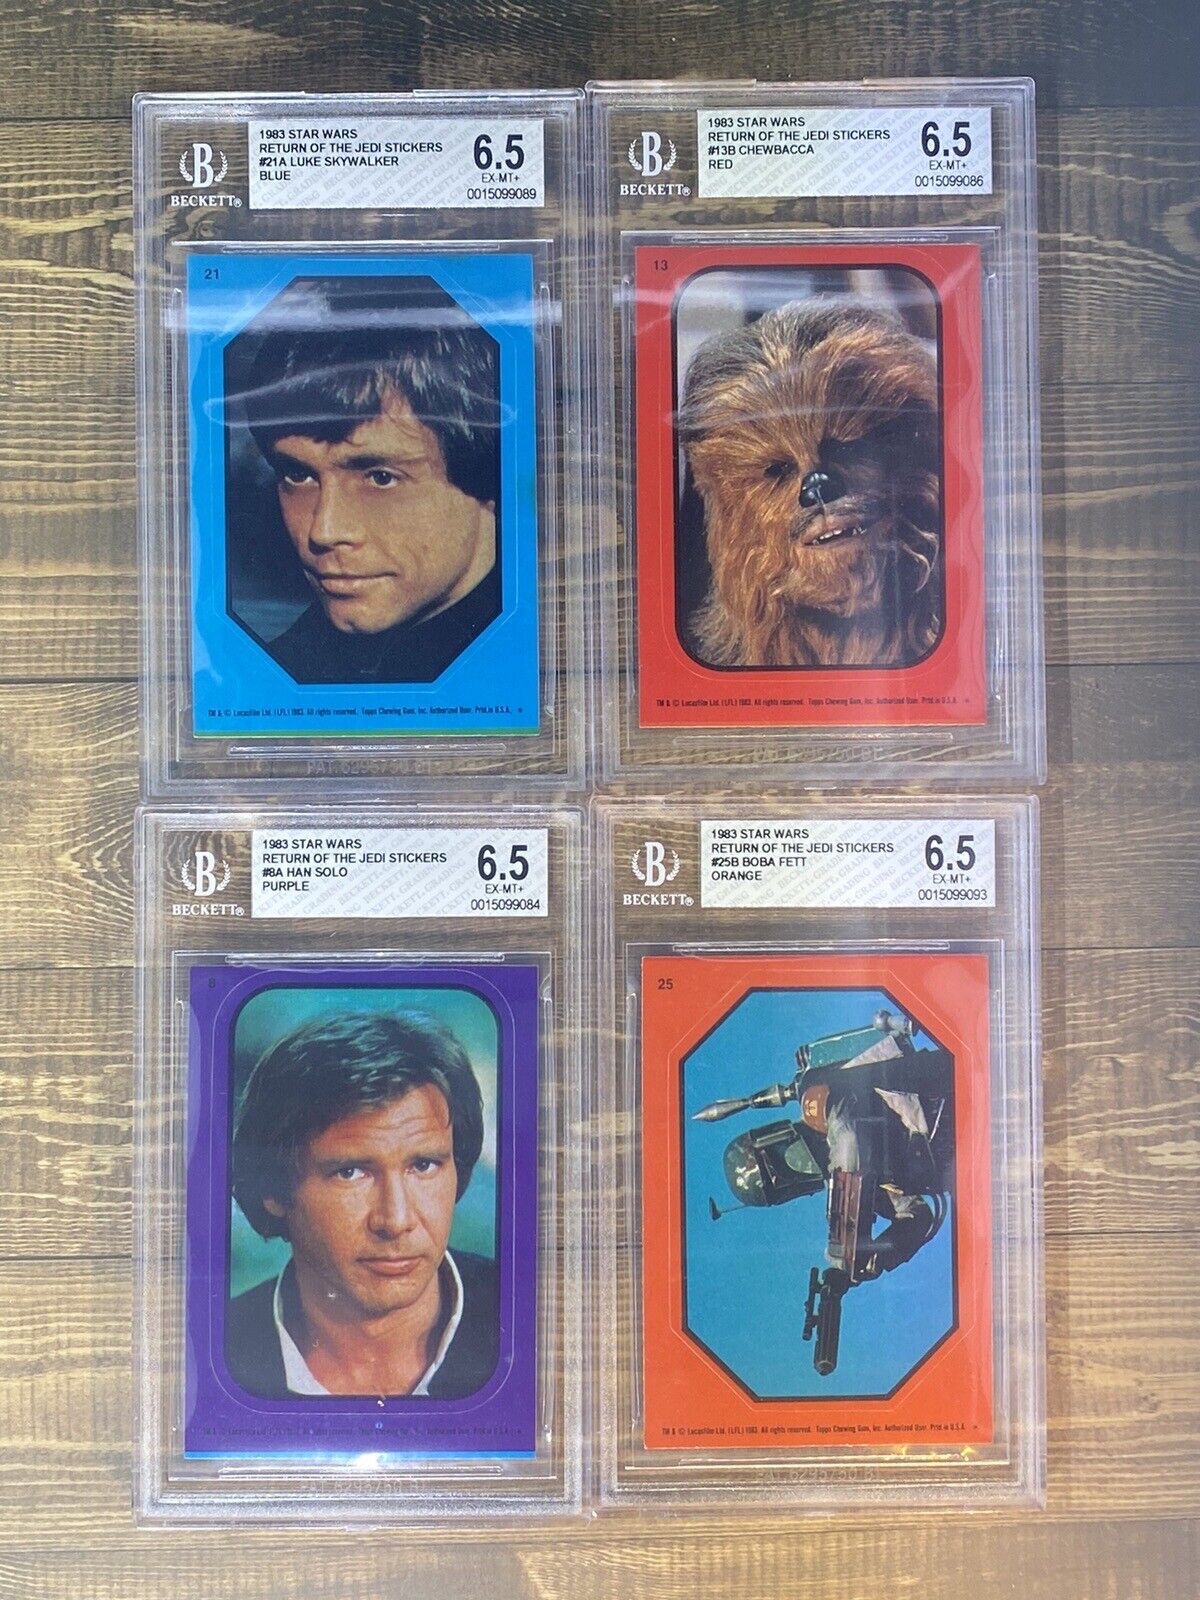 1983 Star Wars Return Of The Jedi Stickers Graded BGS 6.5 Lot